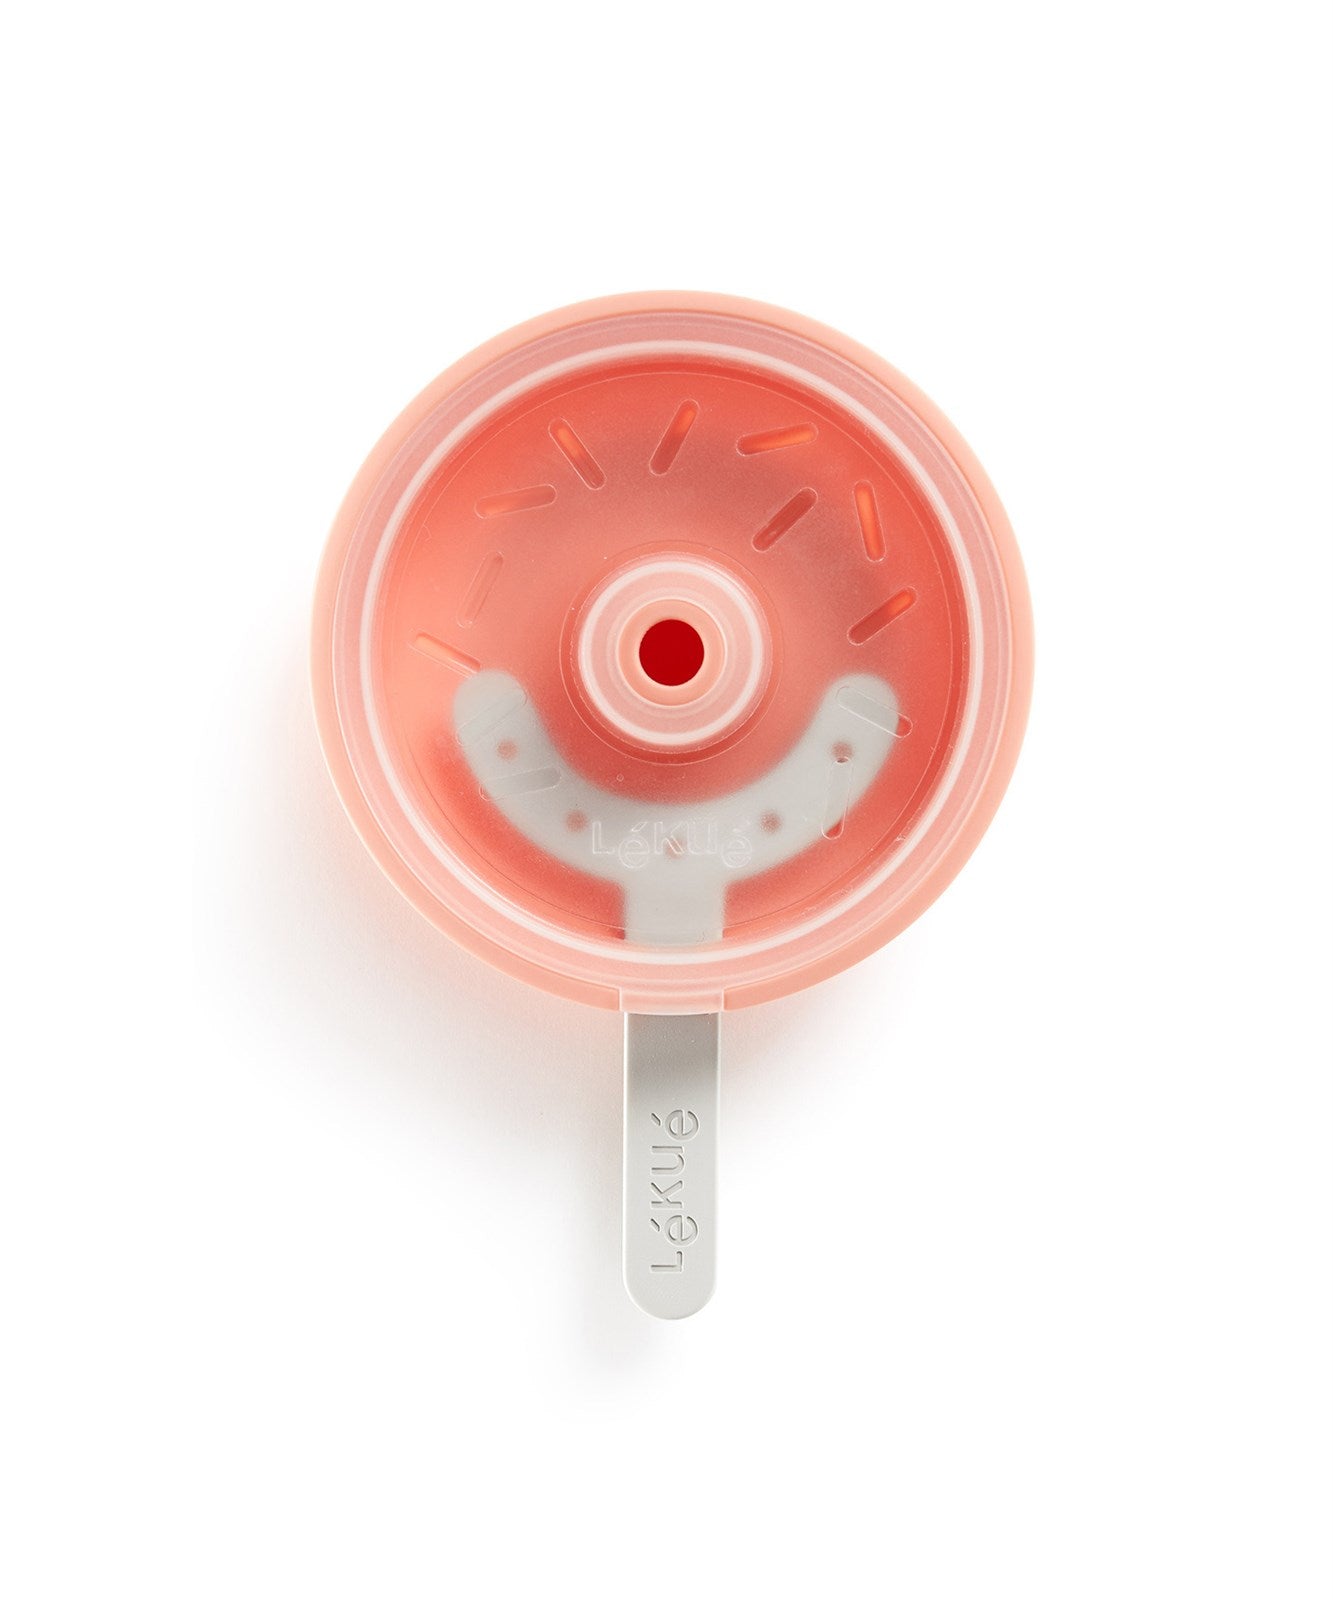 Eisform Donut in Rosa/Grau präsentiert im Onlineshop von KAQTU Design AG. Küchenhelfer ist von Lékué